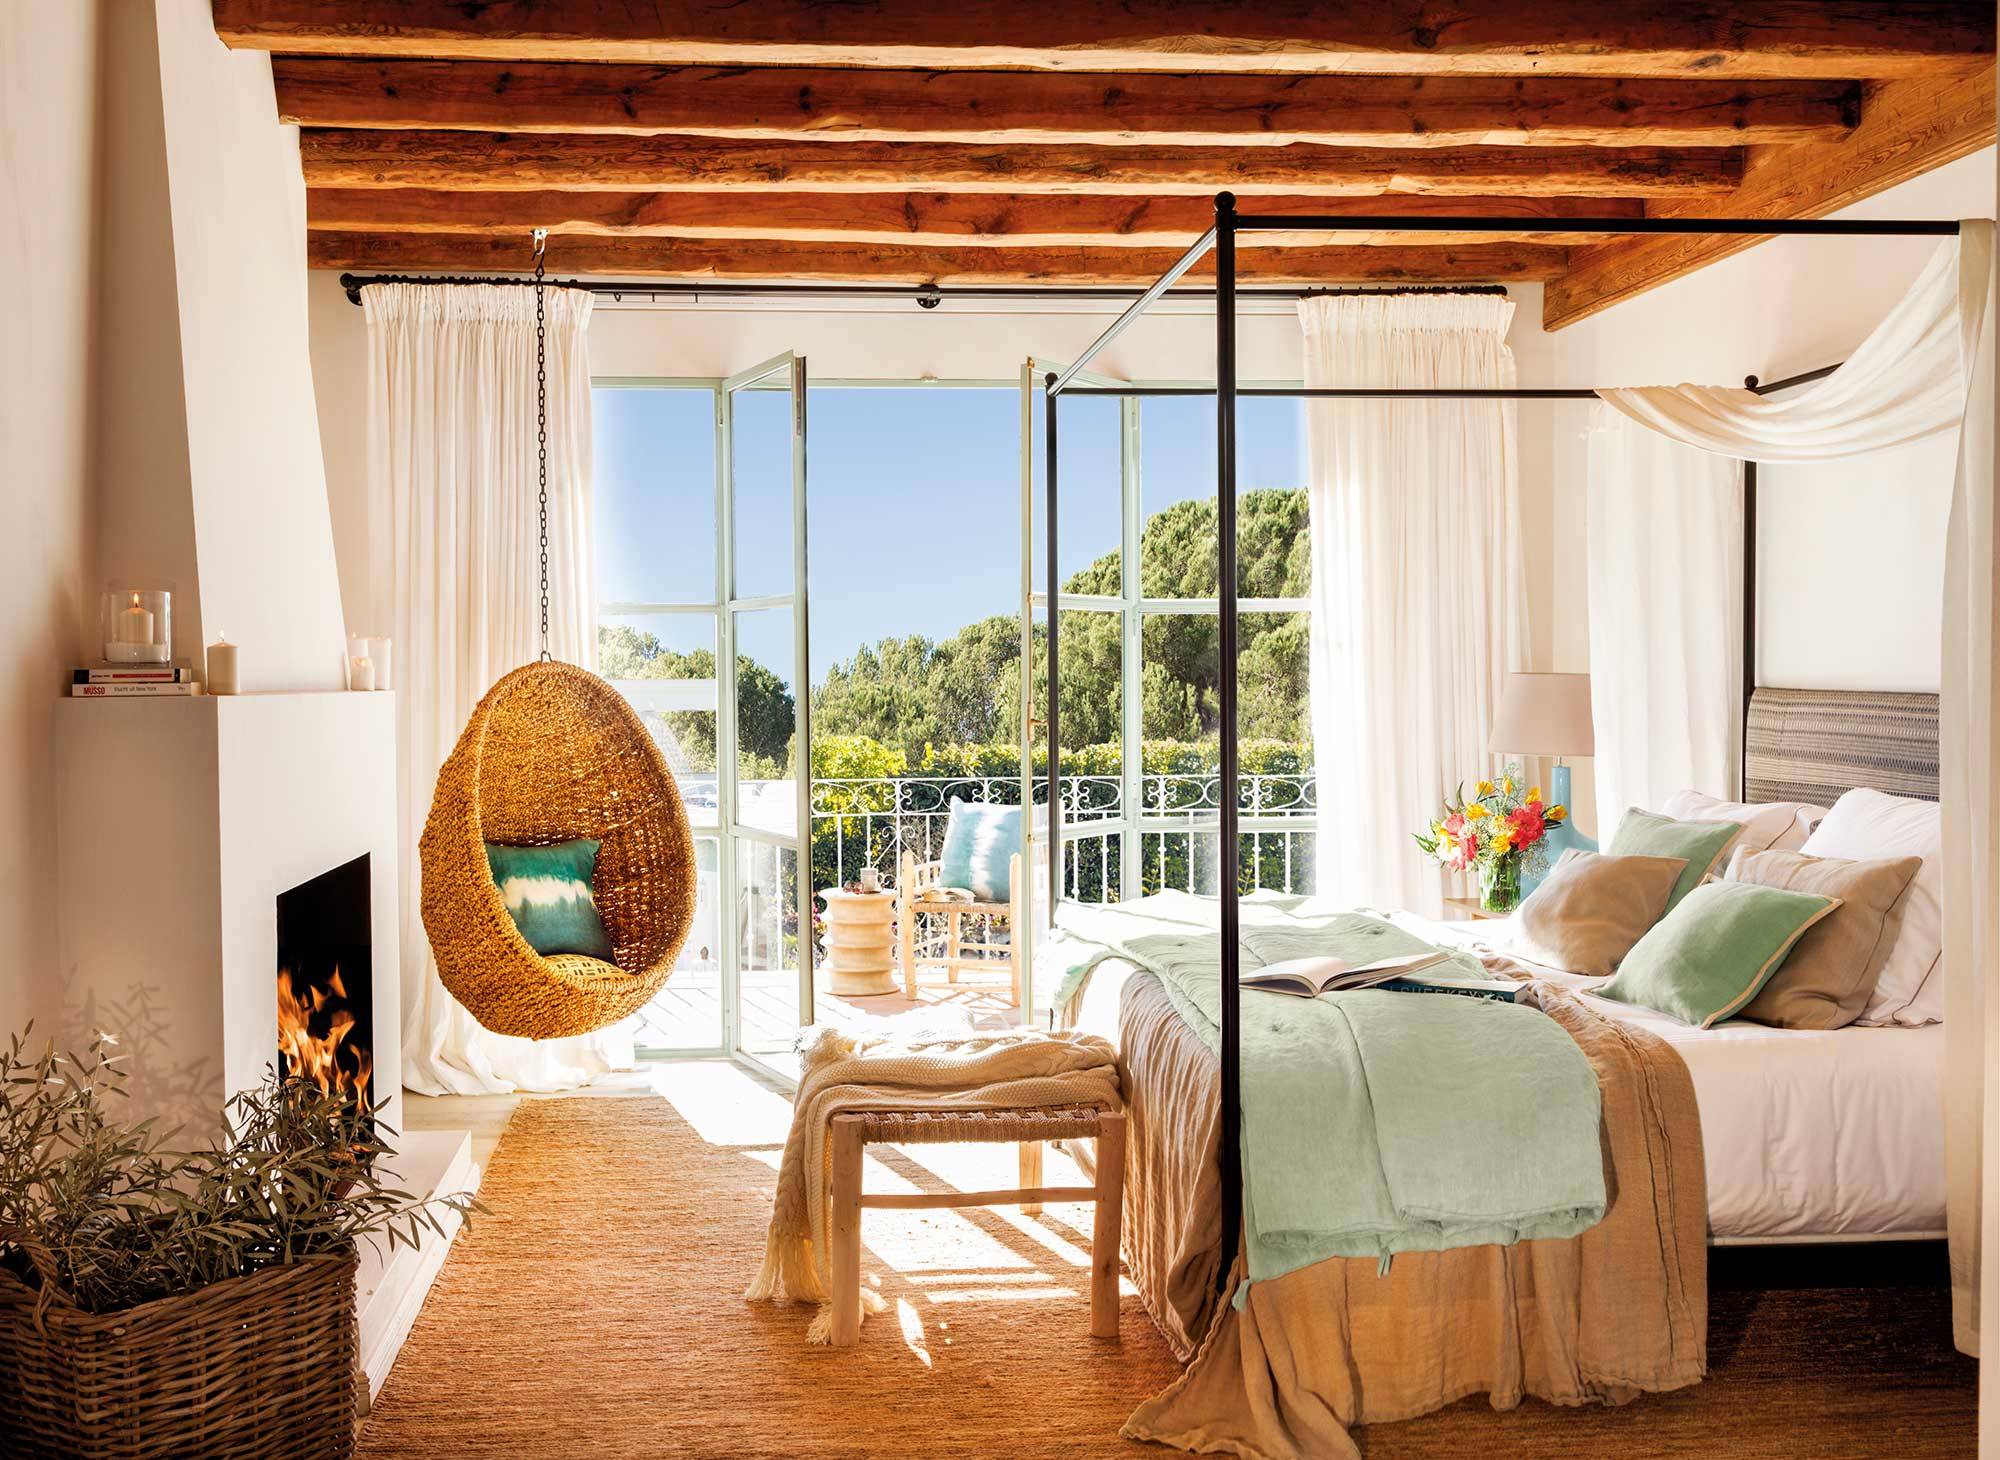 Dormitorio con cama con dosel, chimenea y columpio de fibra colgado del techo de vigas.